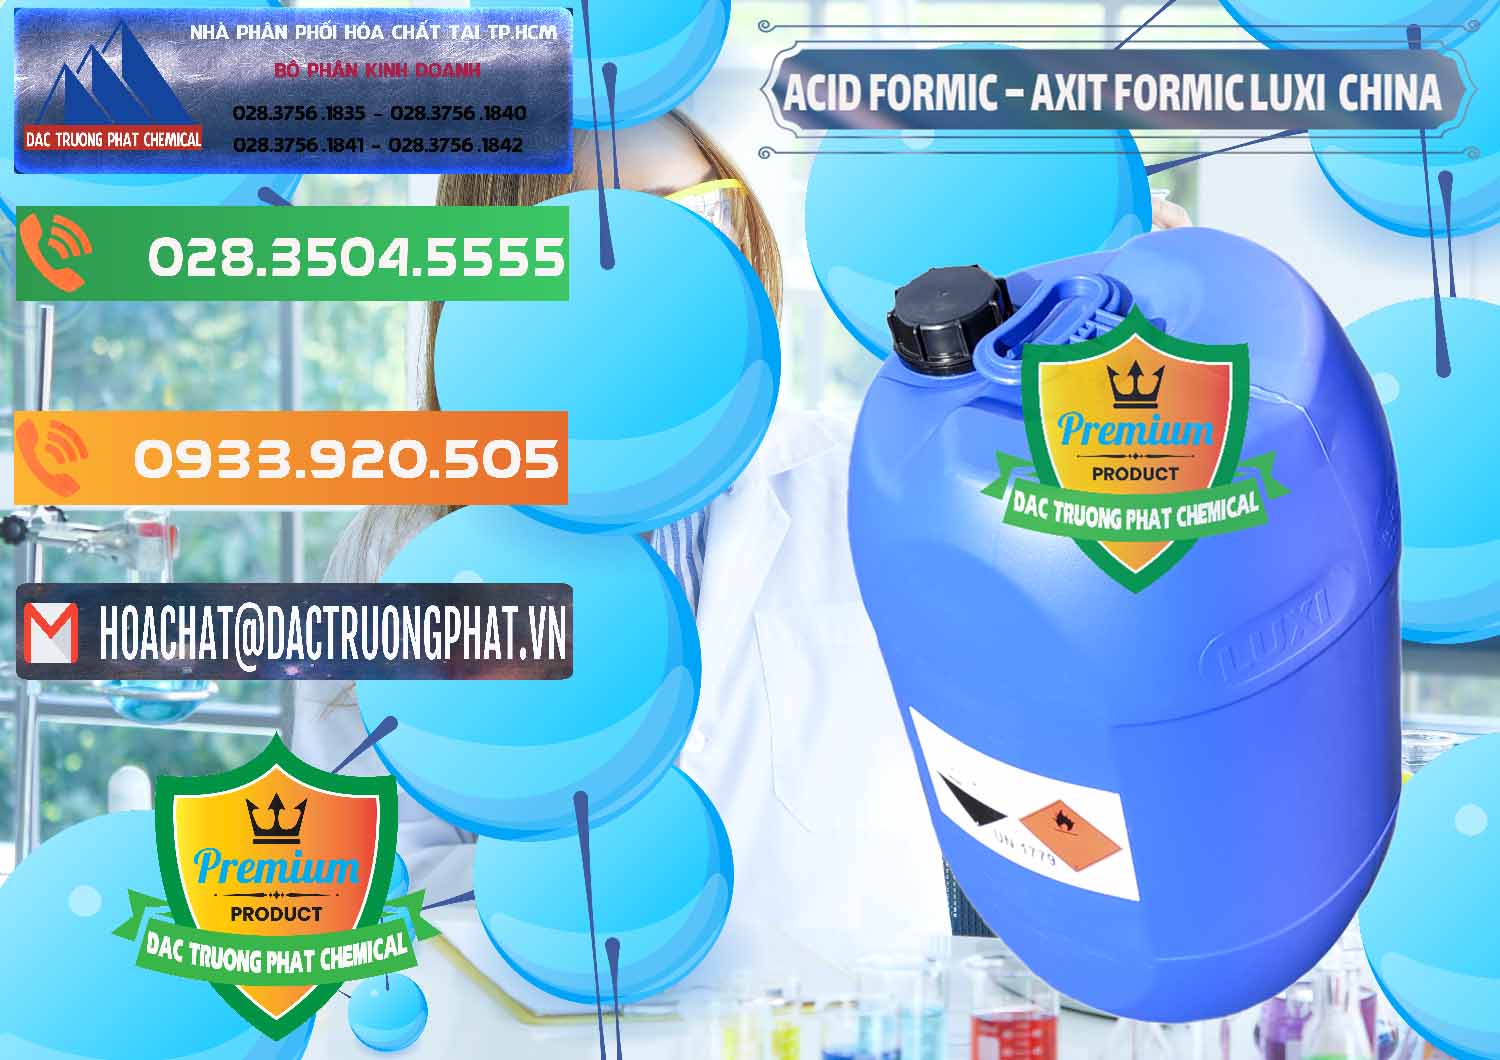 Cty chuyên cung ứng _ bán Acid Formic - Axit Formic Luxi Trung Quốc China - 0029 - Nơi cung cấp và kinh doanh hóa chất tại TP.HCM - hoachatxulynuoc.com.vn